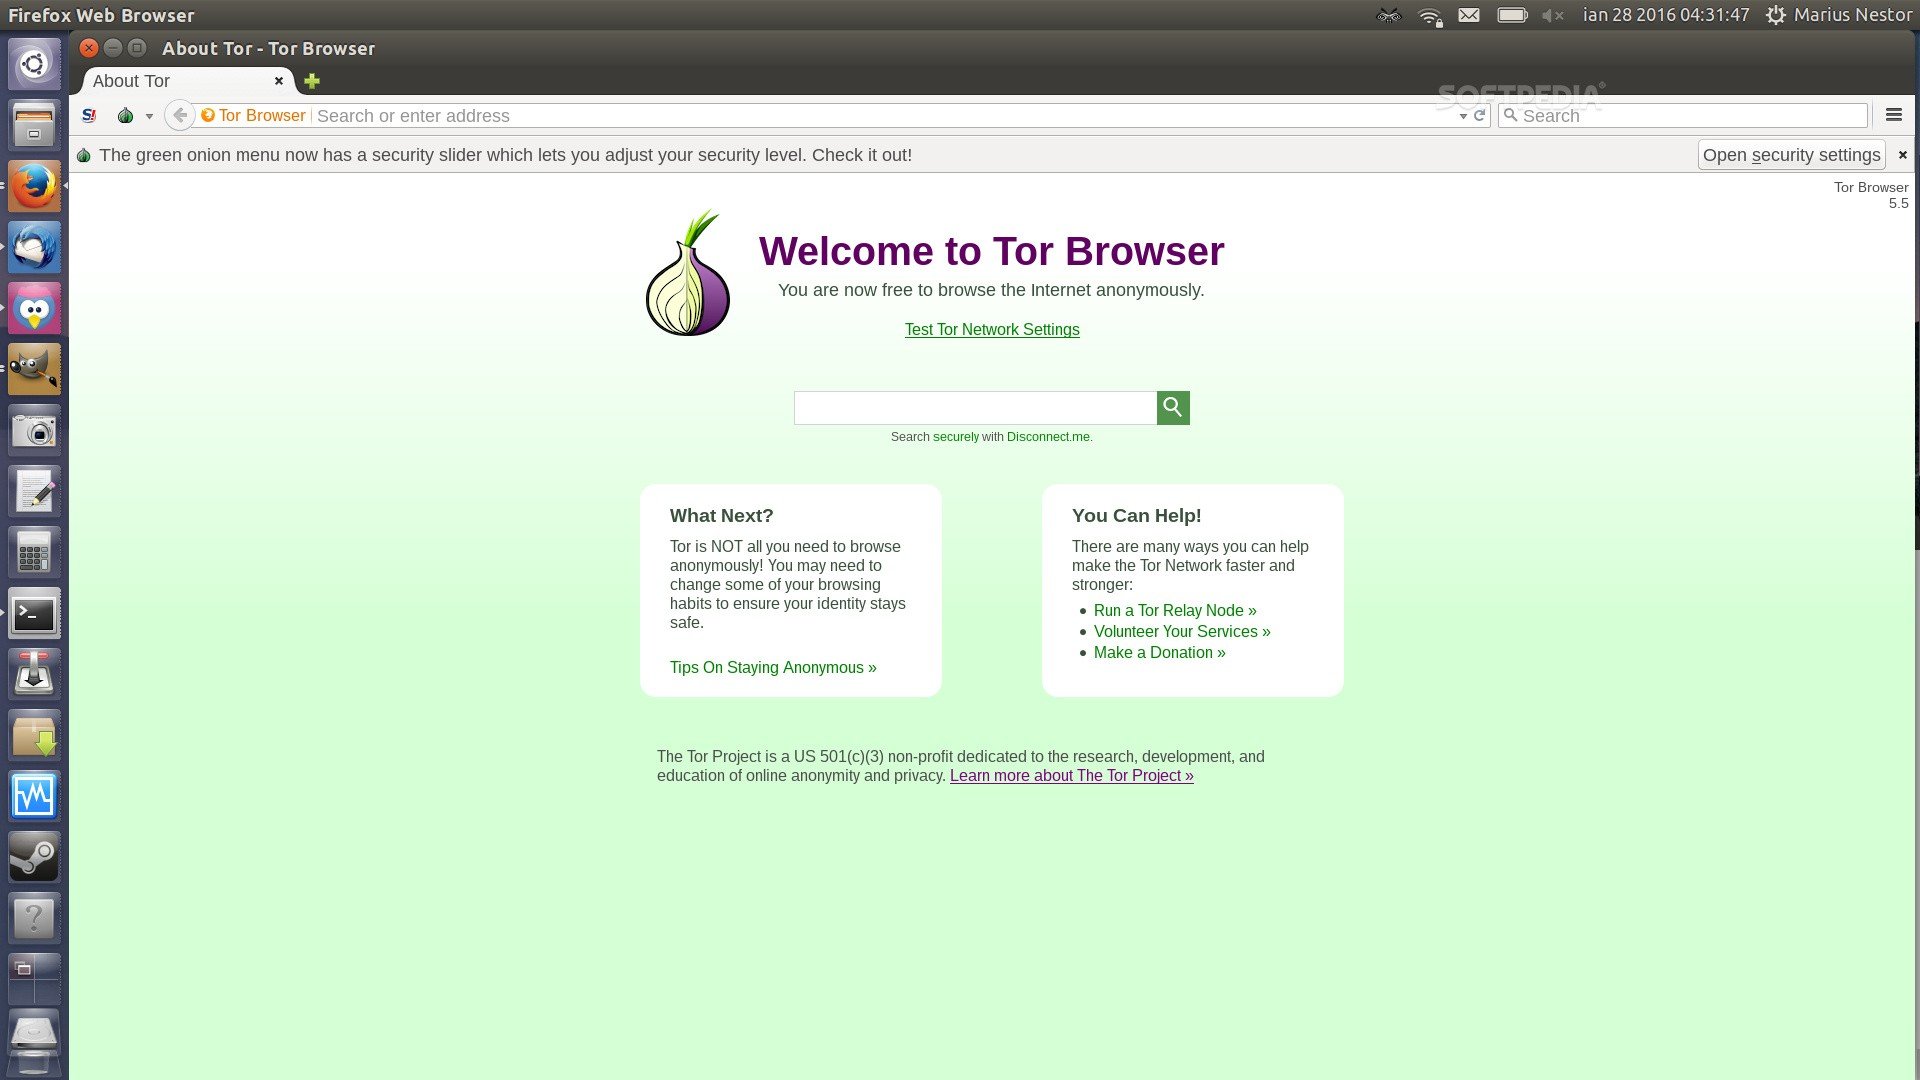 Как удалить историю в tor browser mega2web скачать tor browser ios скачать бесплатно mega